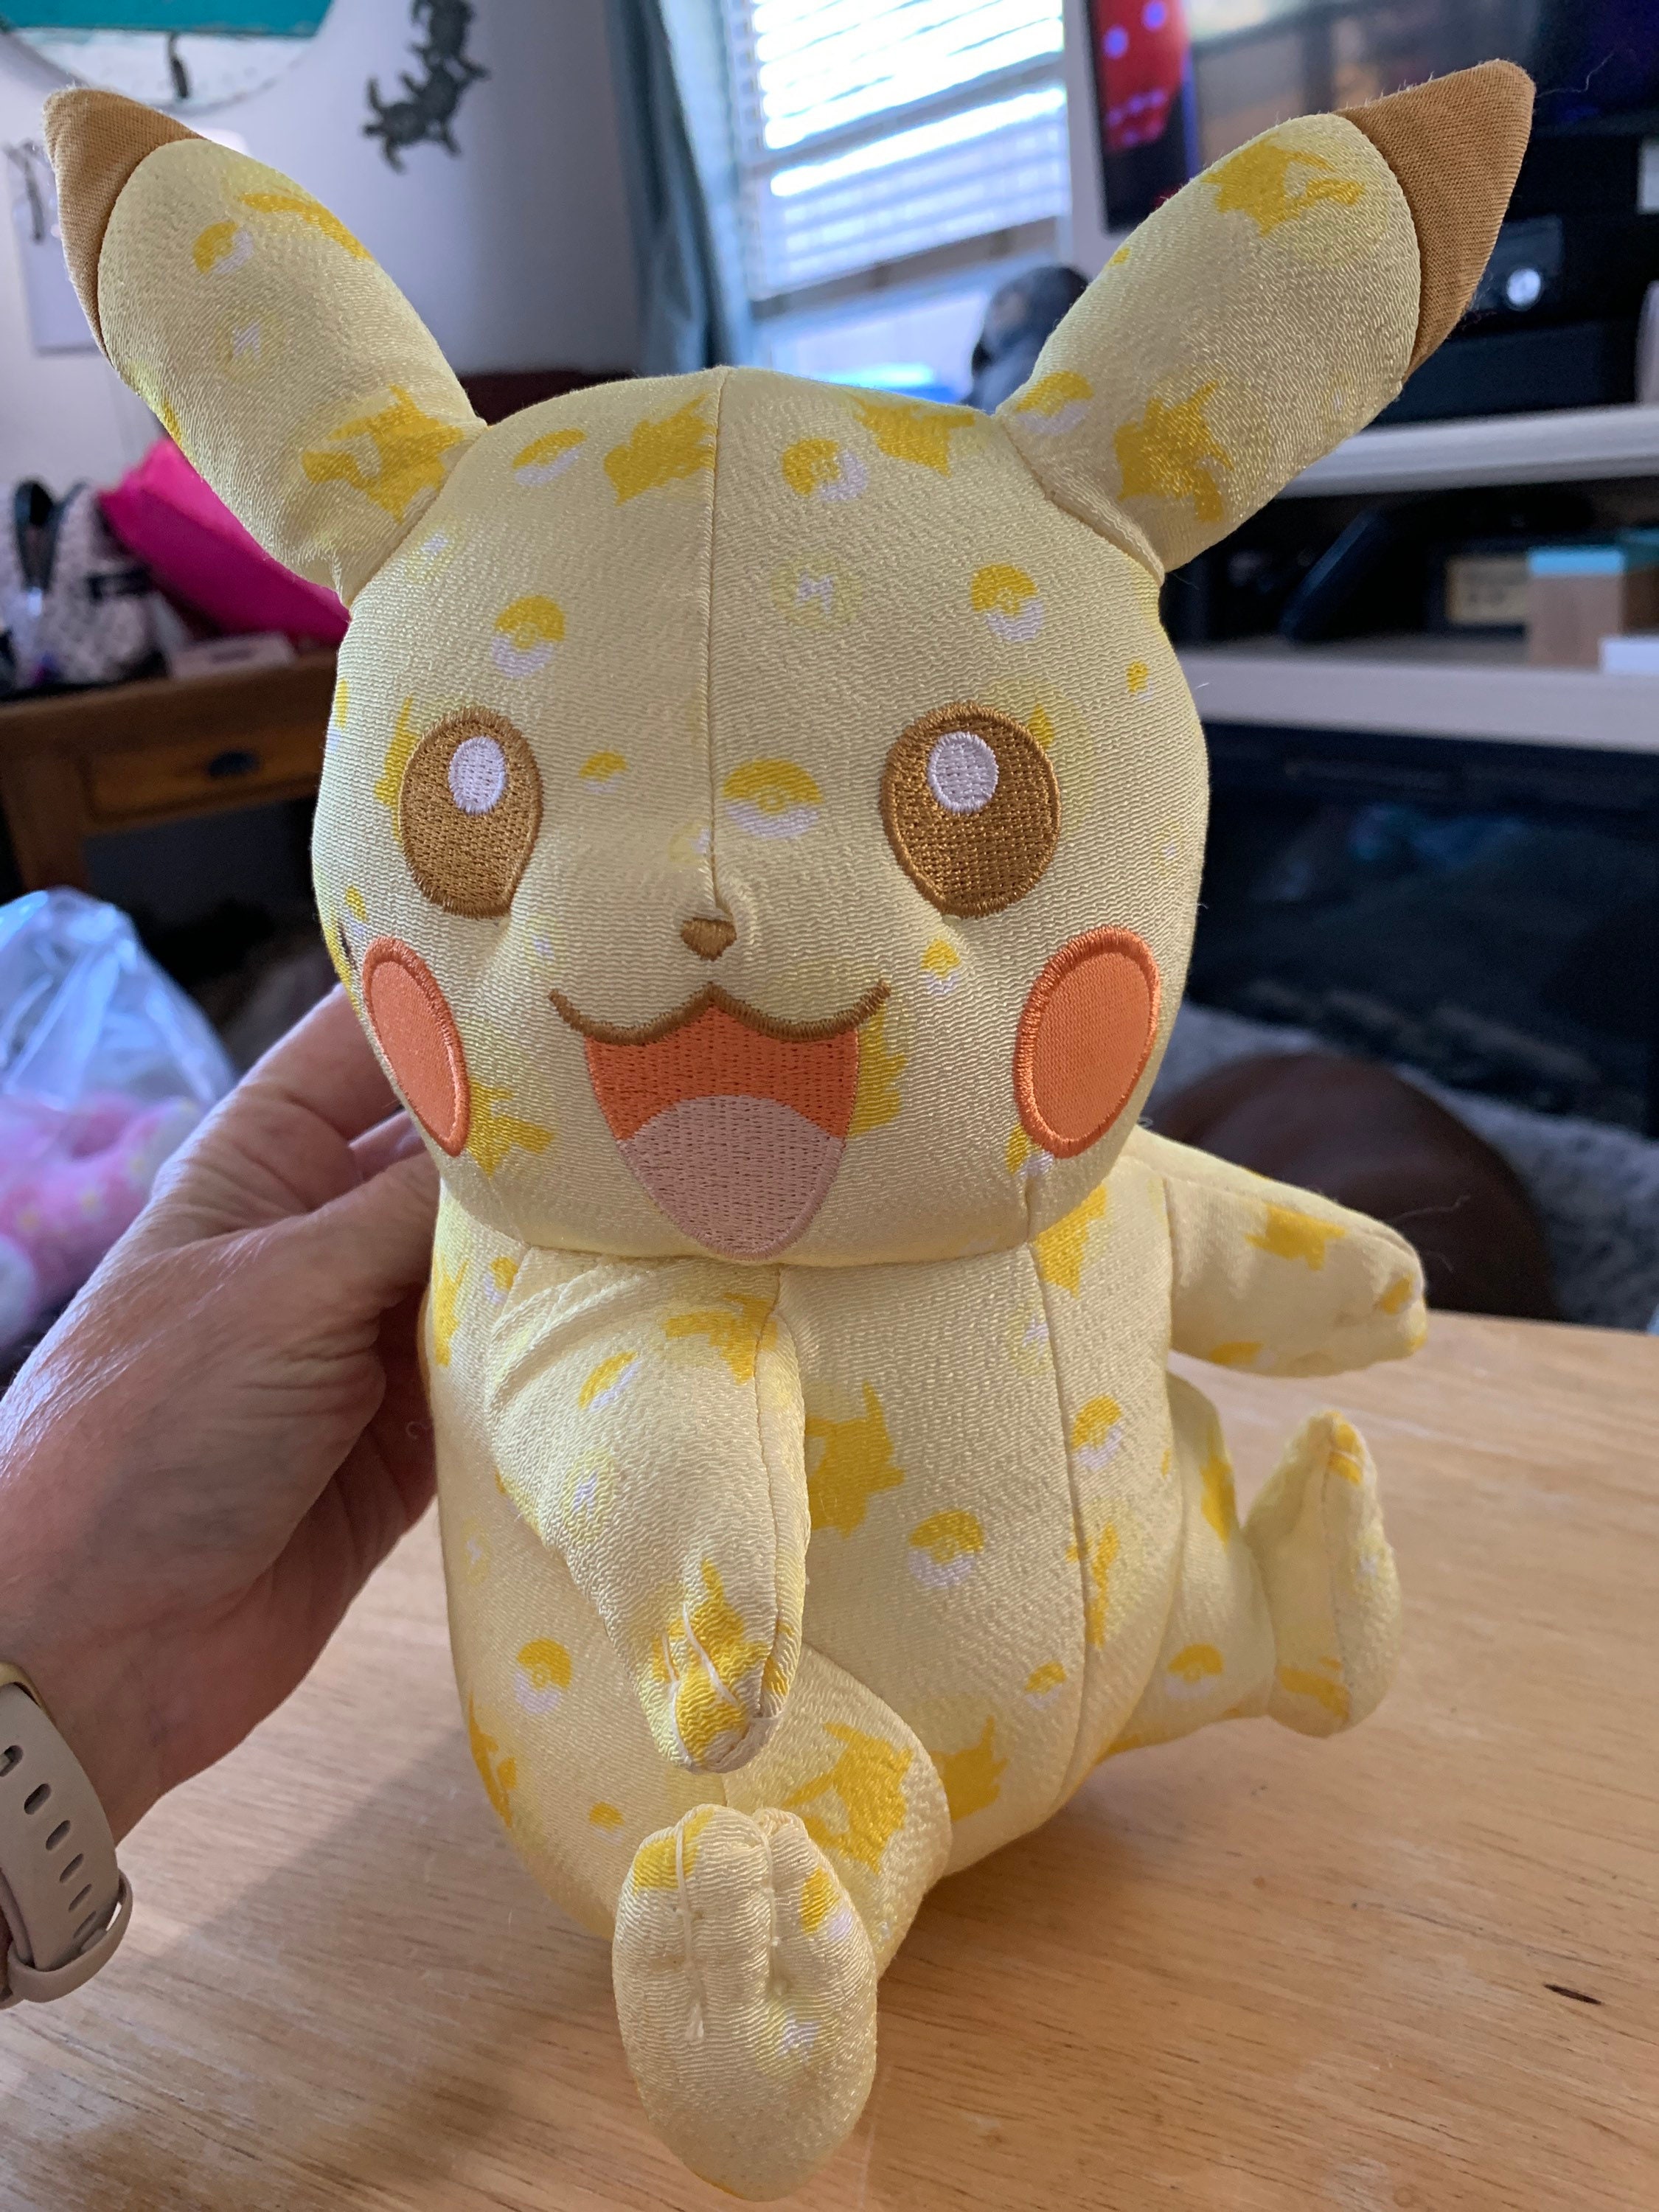 Peluche Pokemon - Pikachu Dodo 20cm - Tomy